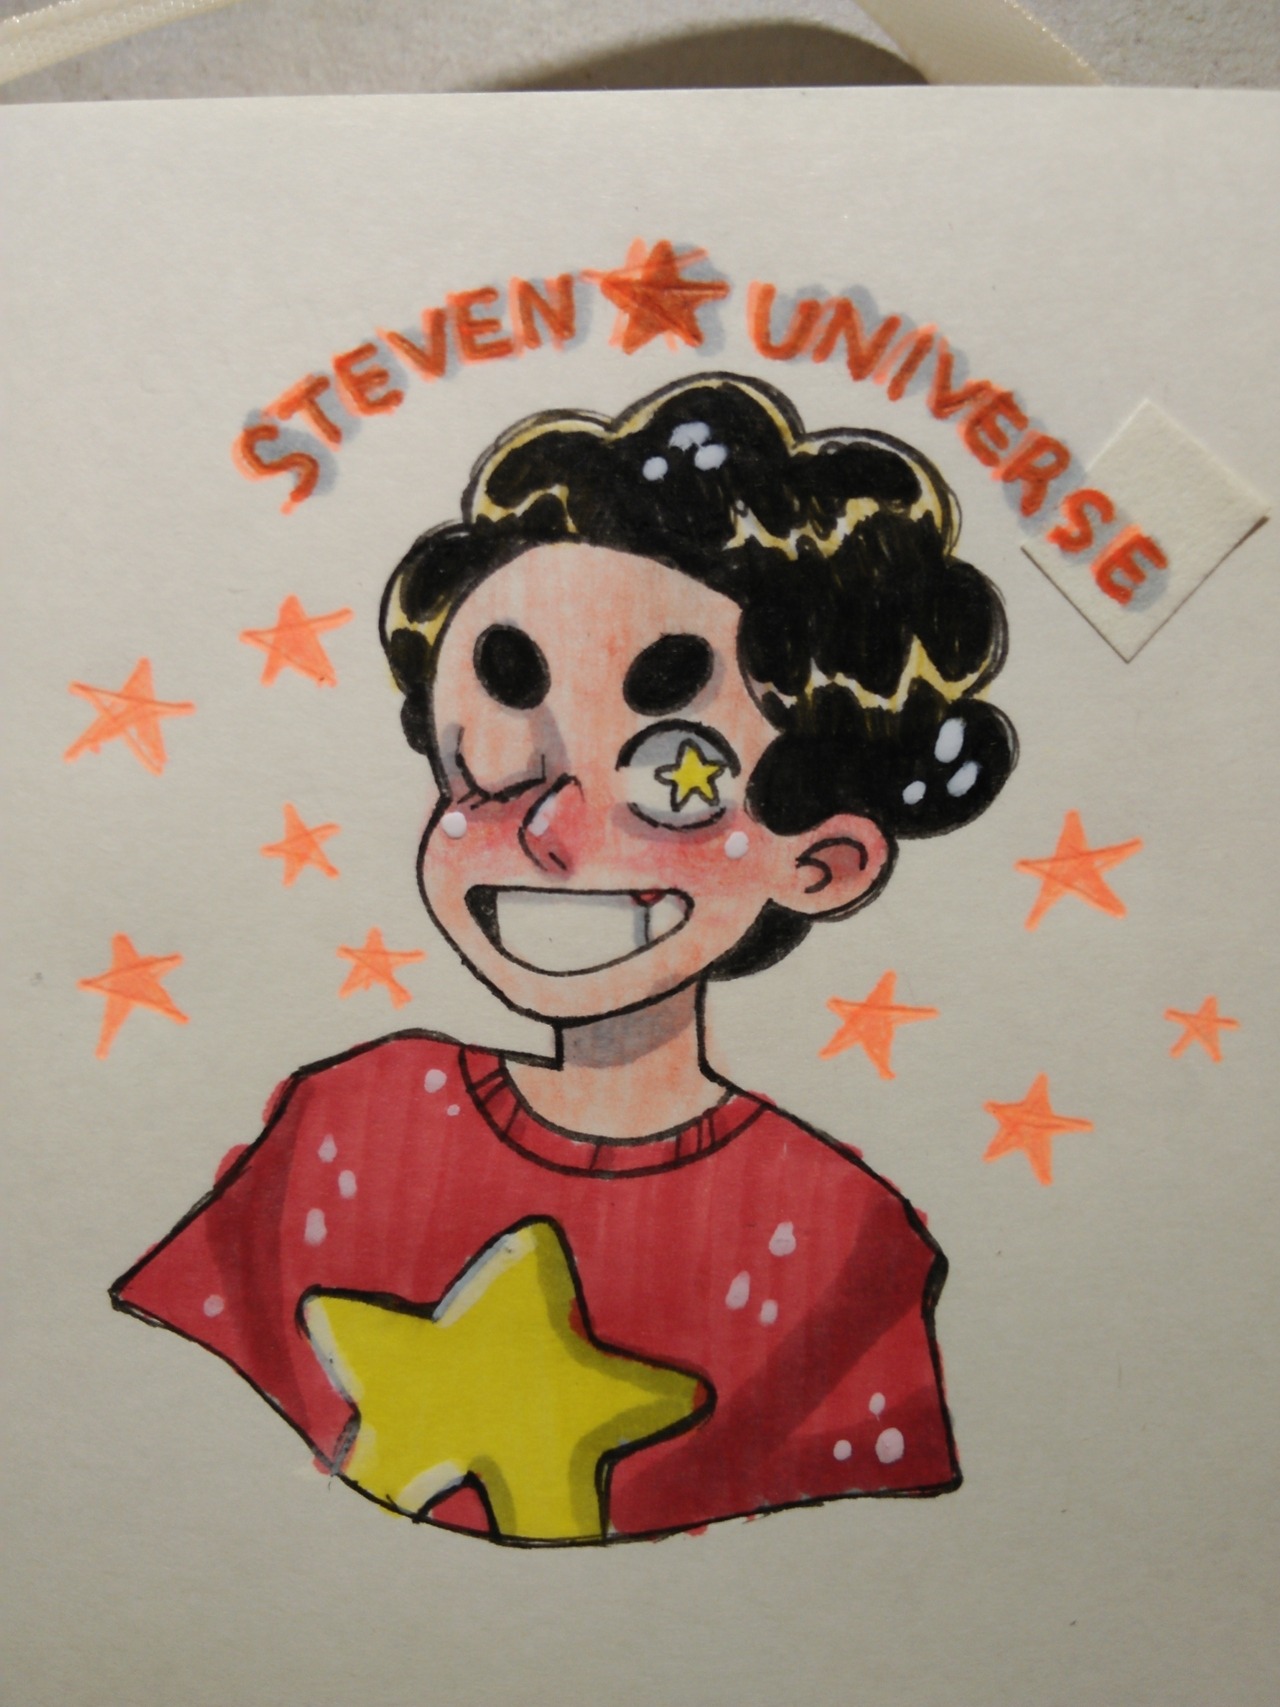 Steven!